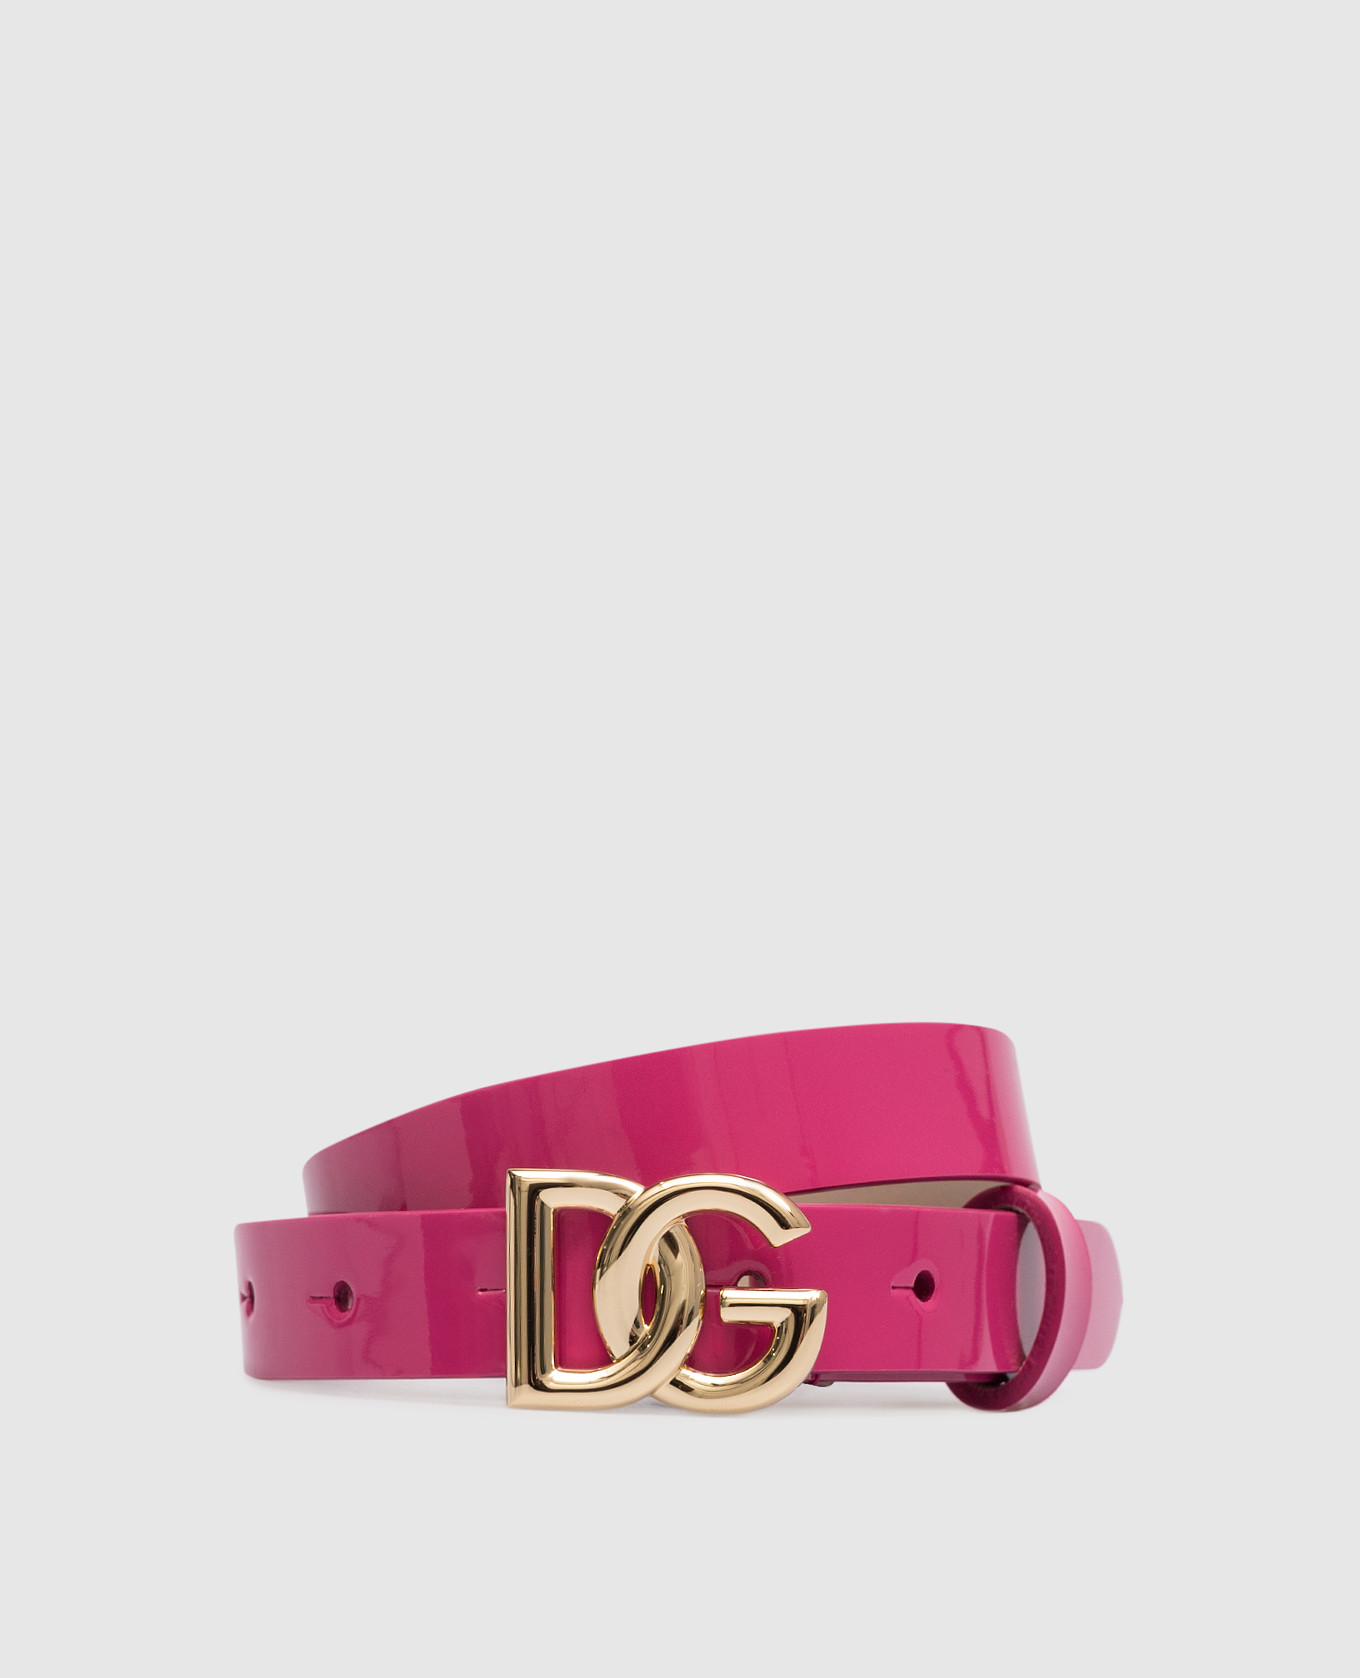 Cintura in vernice rosa baby con logo DG